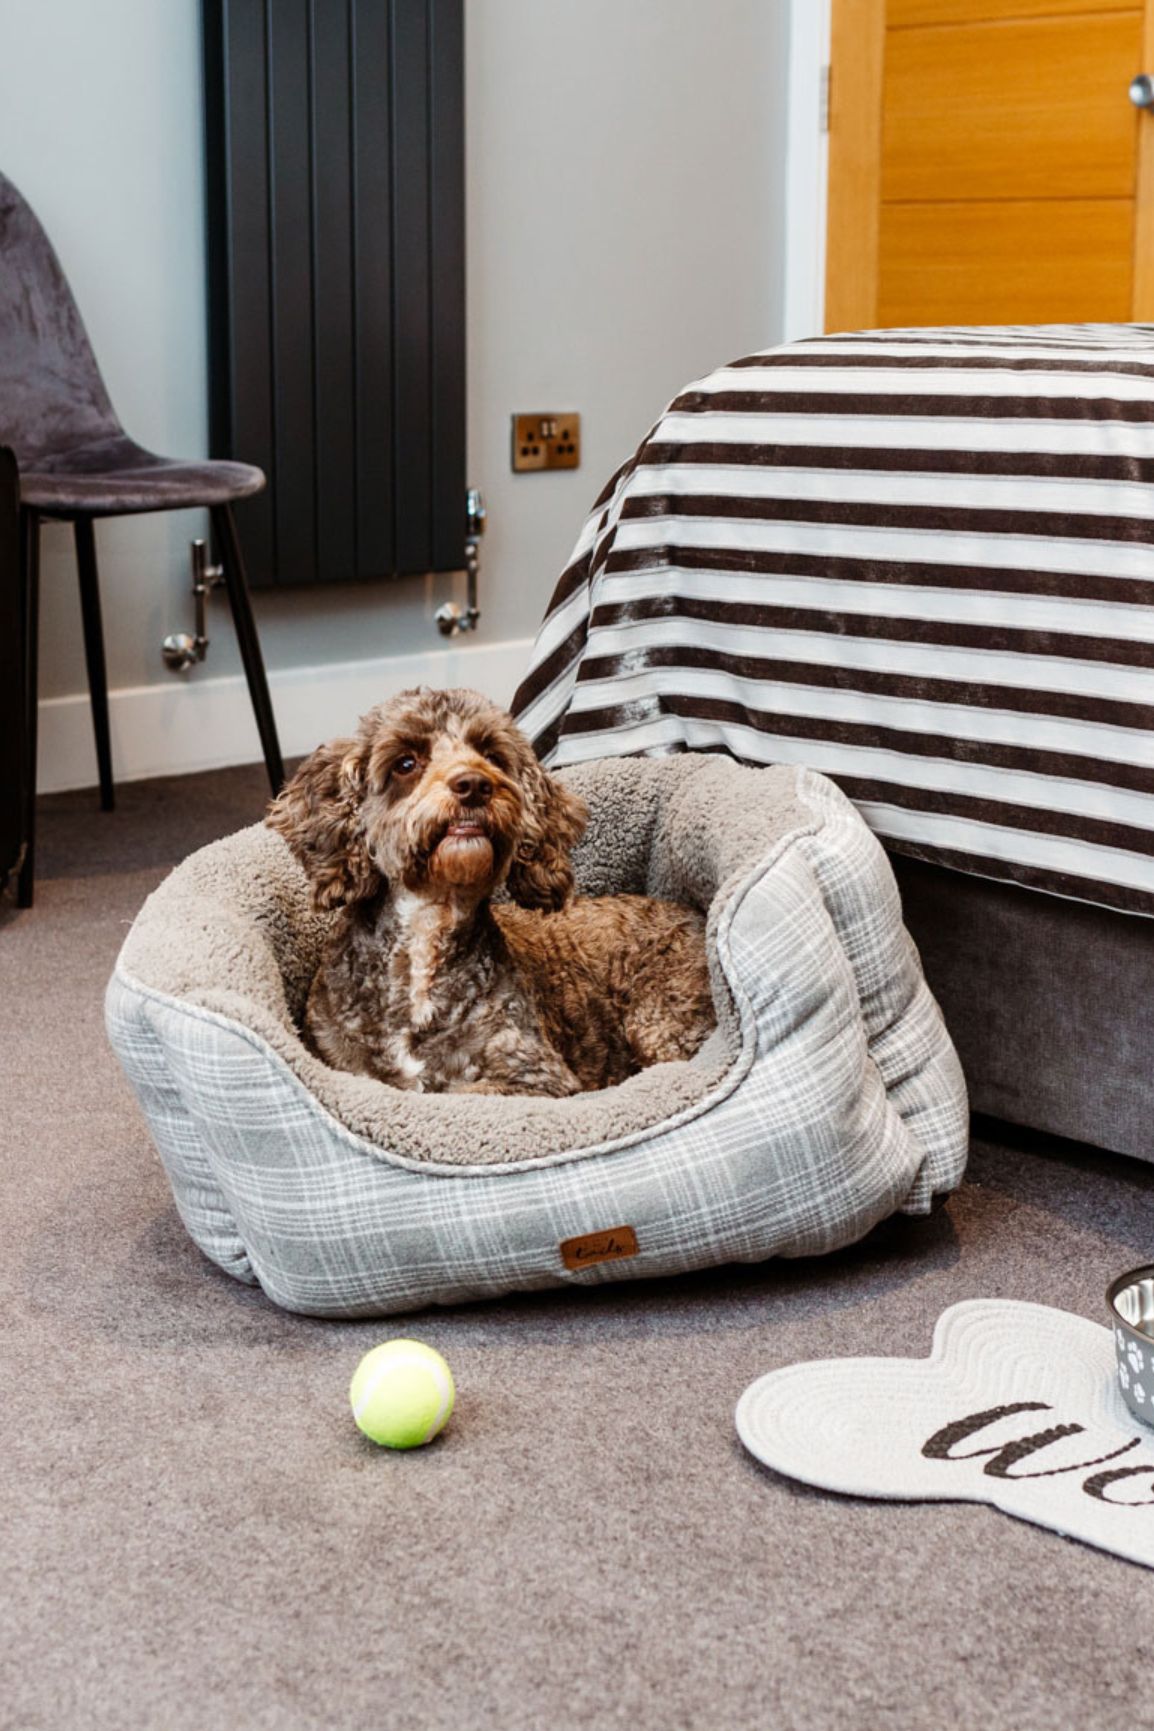 A dog in a dog bed in a hotel room in a dog-friendly hotel in North Devon